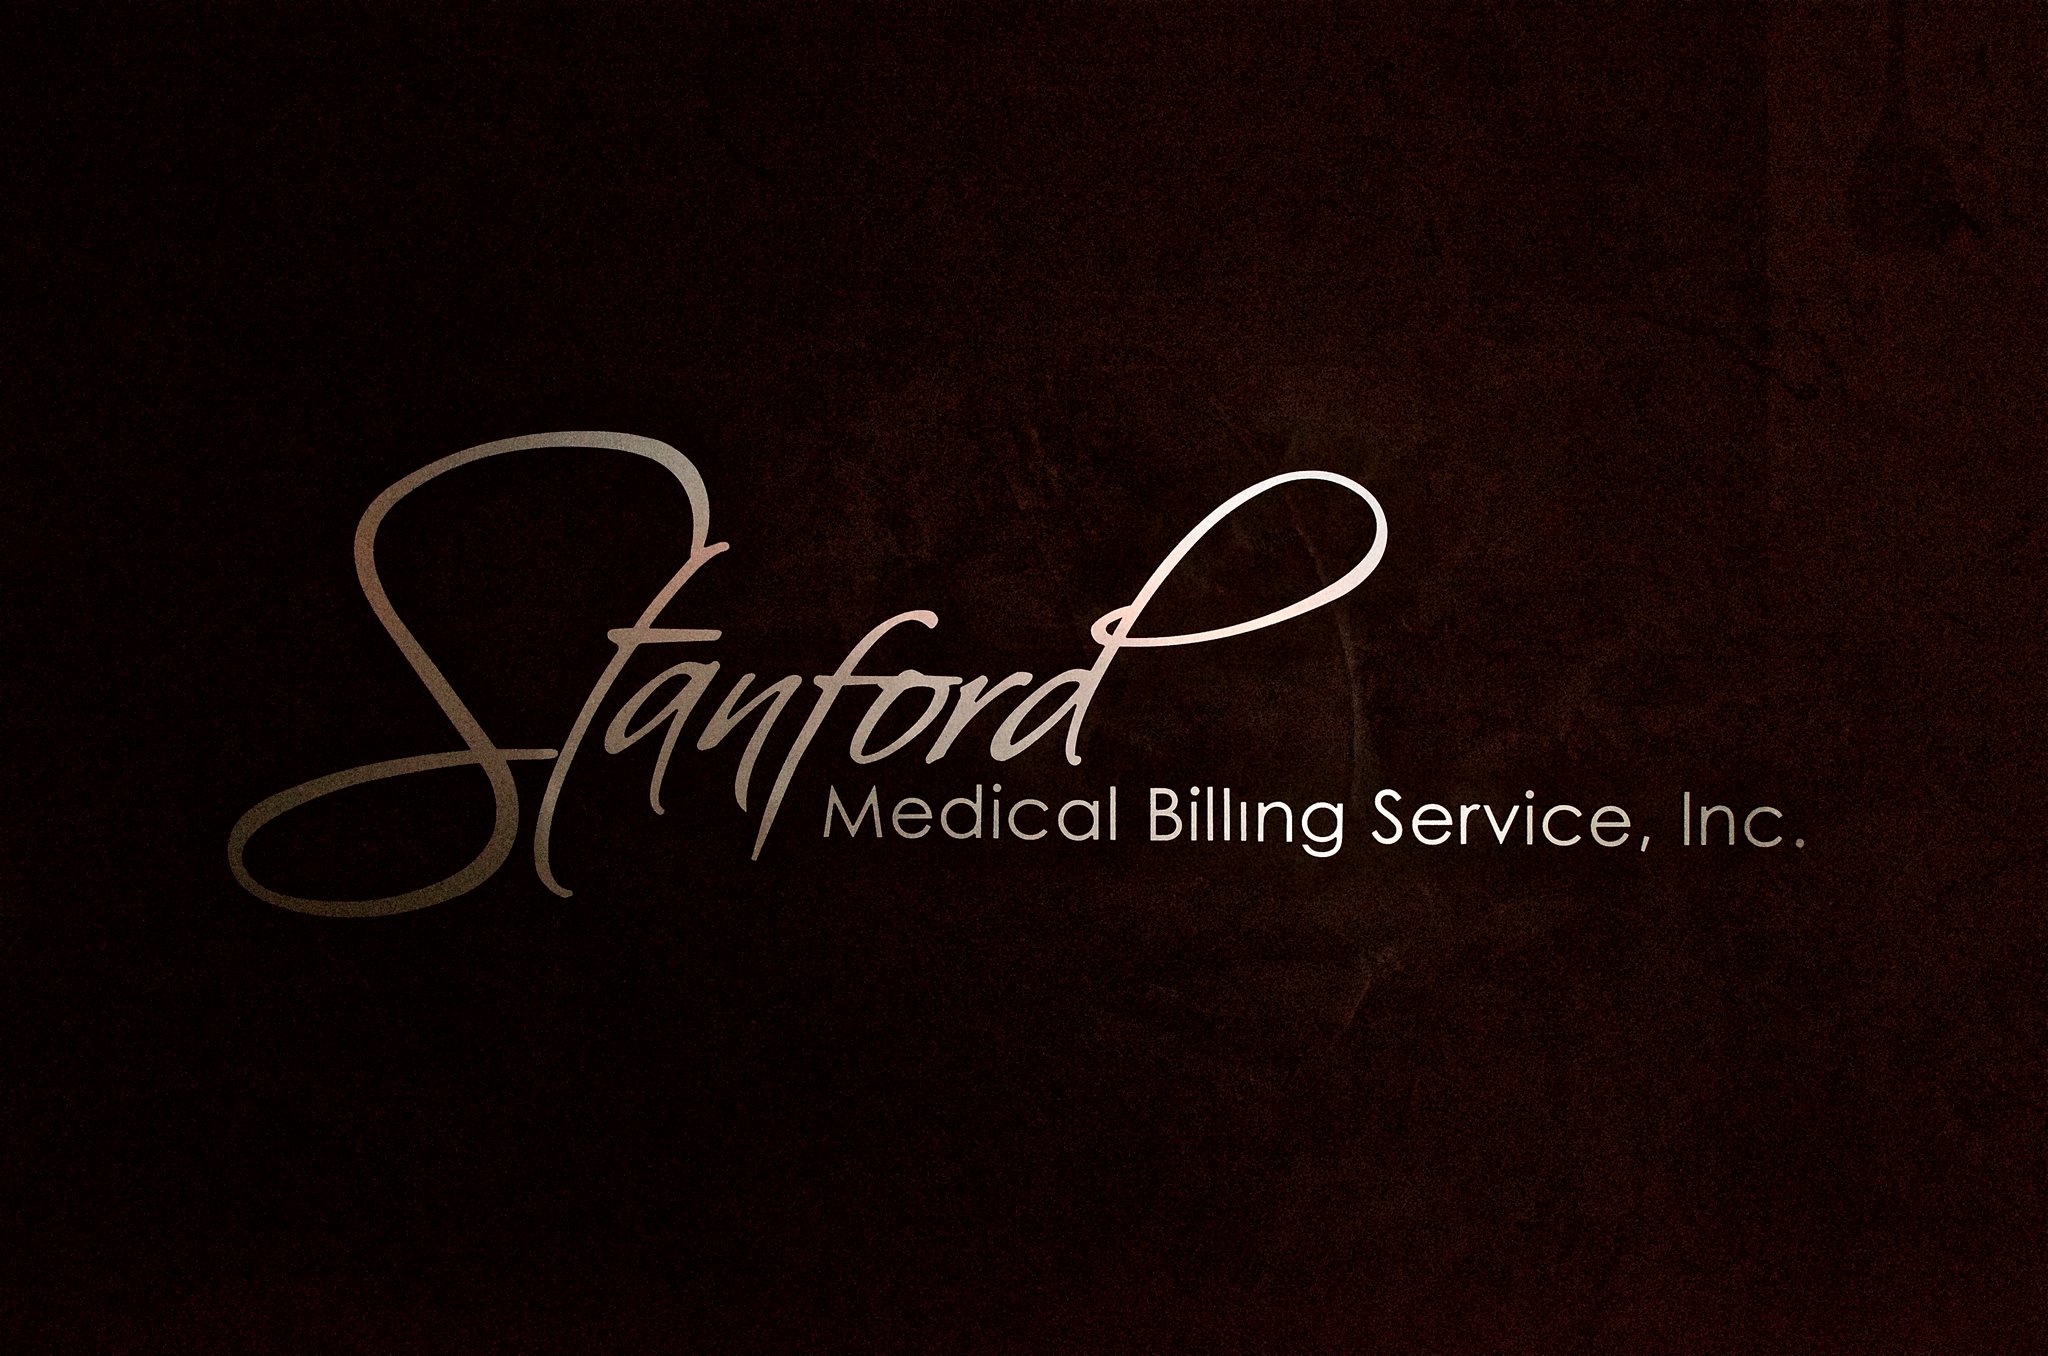 Stanford Medical Billing Services